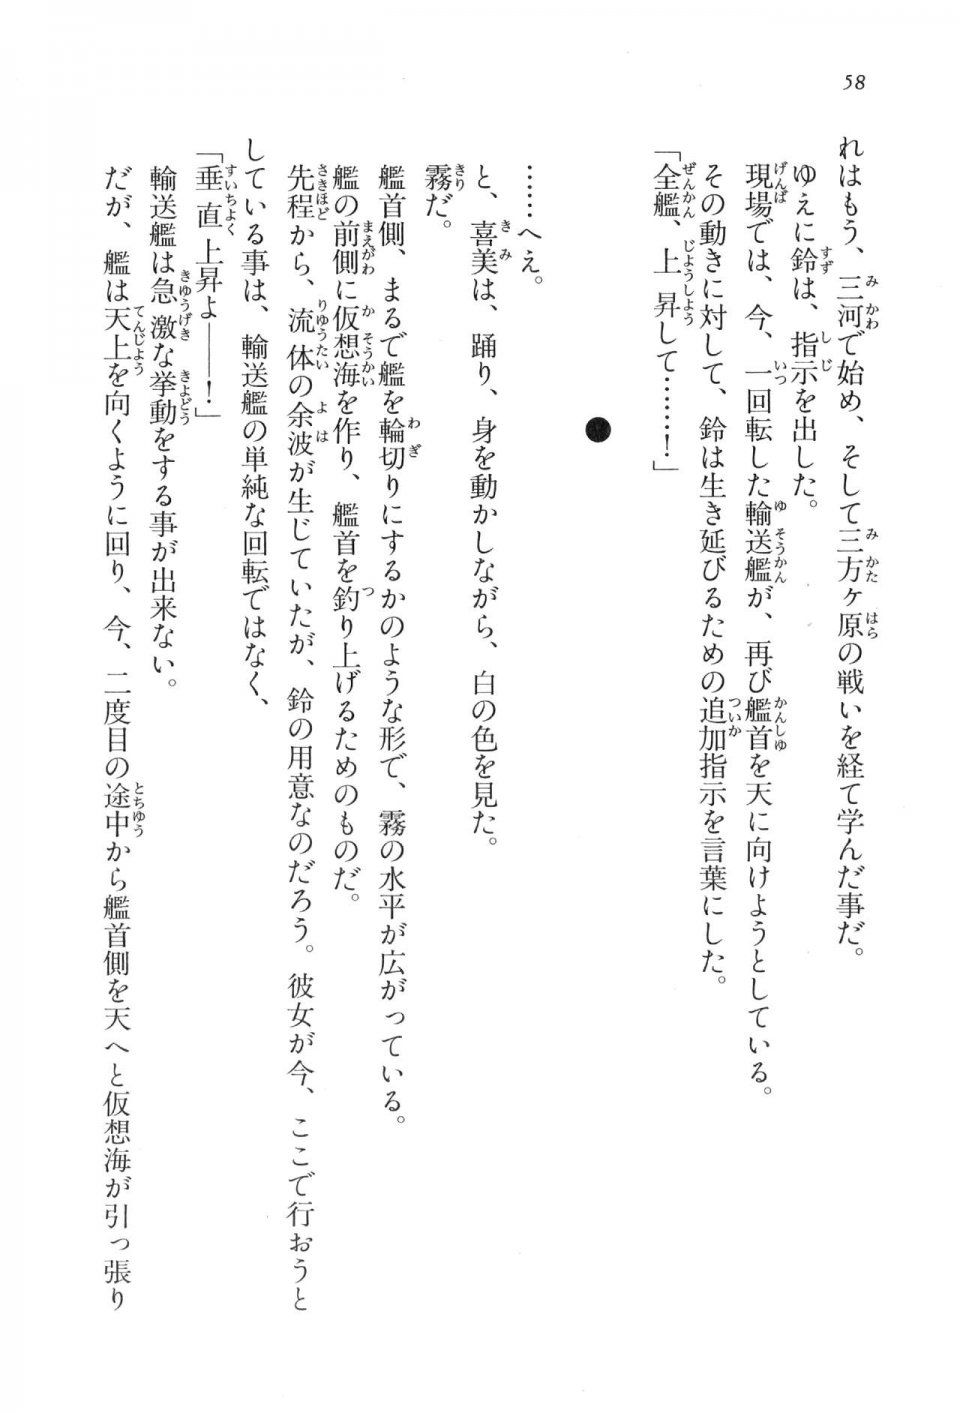 Kyoukai Senjou no Horizon LN Vol 17(7B) - Photo #58